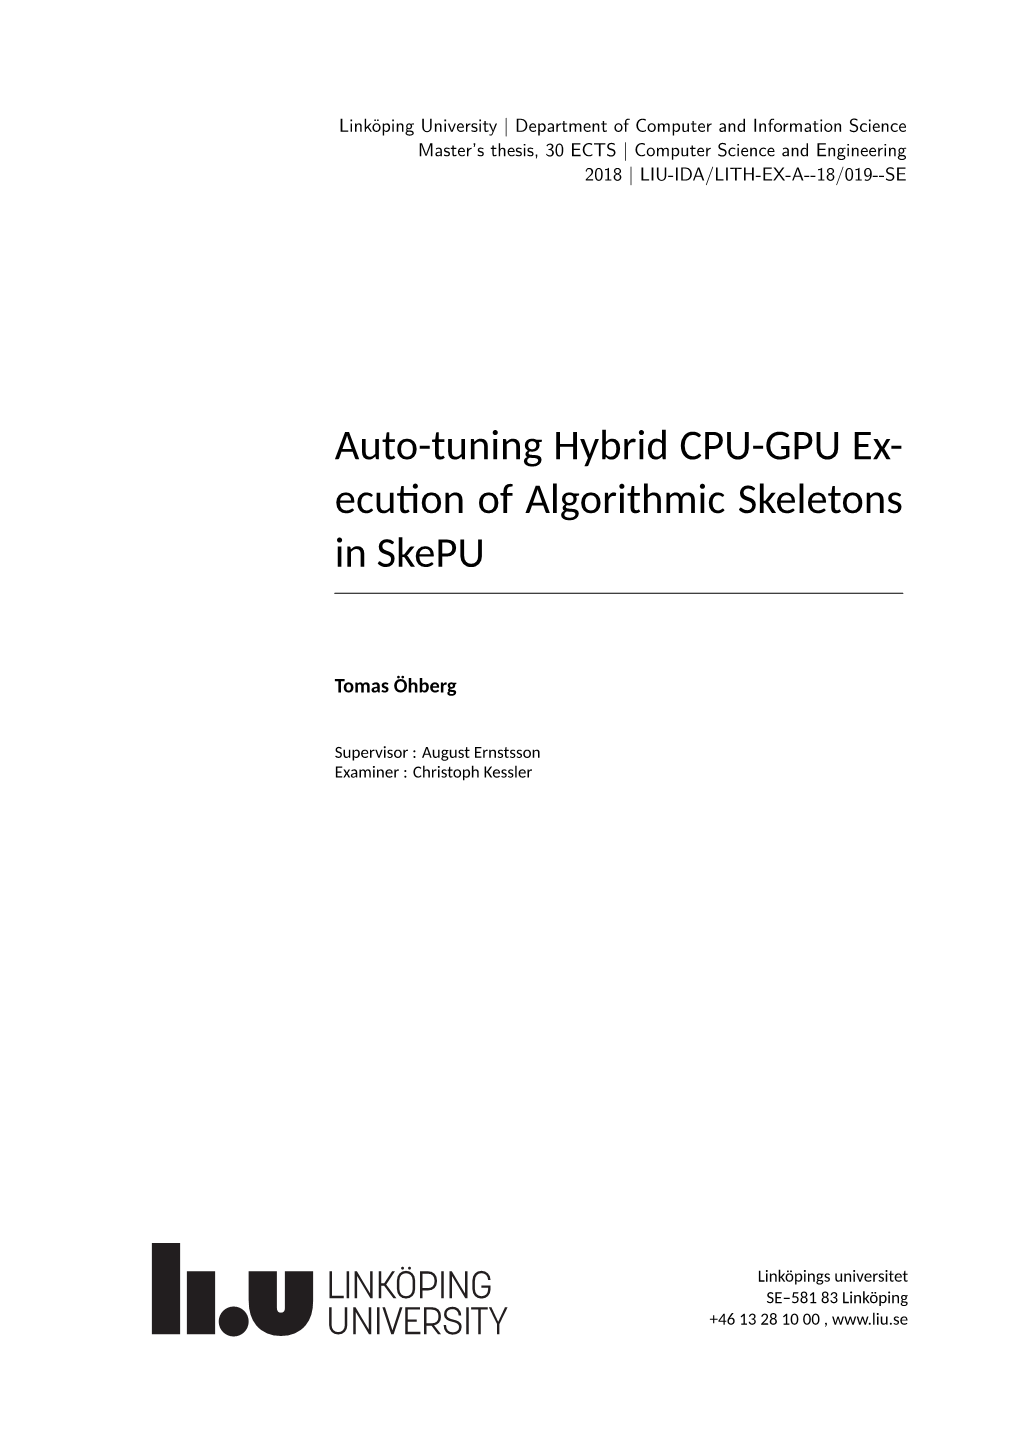 Auto-Tuning Hybrid CPU-GPU Ex- Ecu on of Algorithmic Skeletons in Skepu